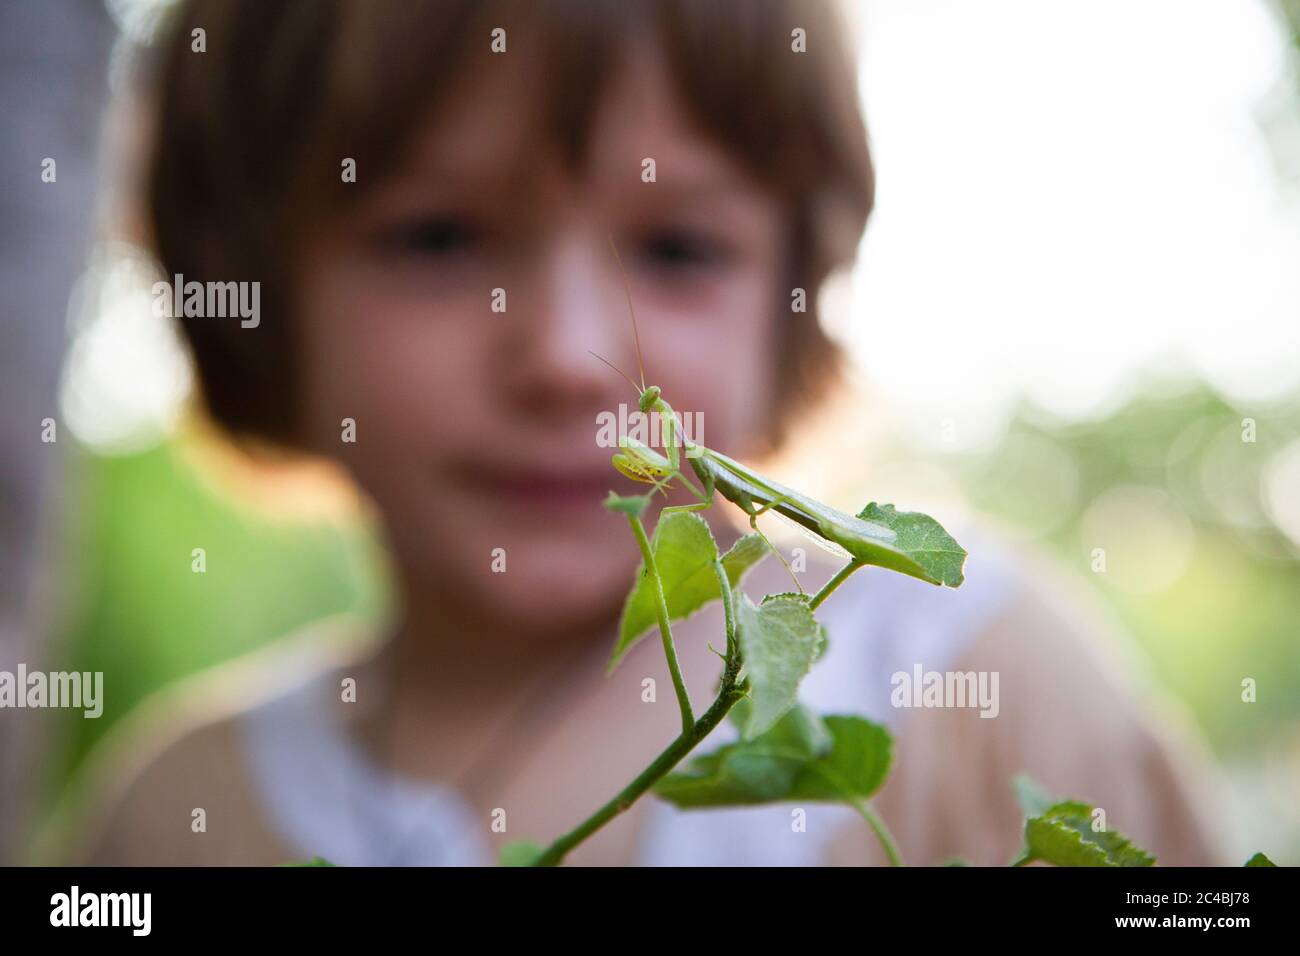 Ein fünfjähriger Junge, der eine Gottesanbeterin auf einem Blatt genau ansieht. Stockfoto